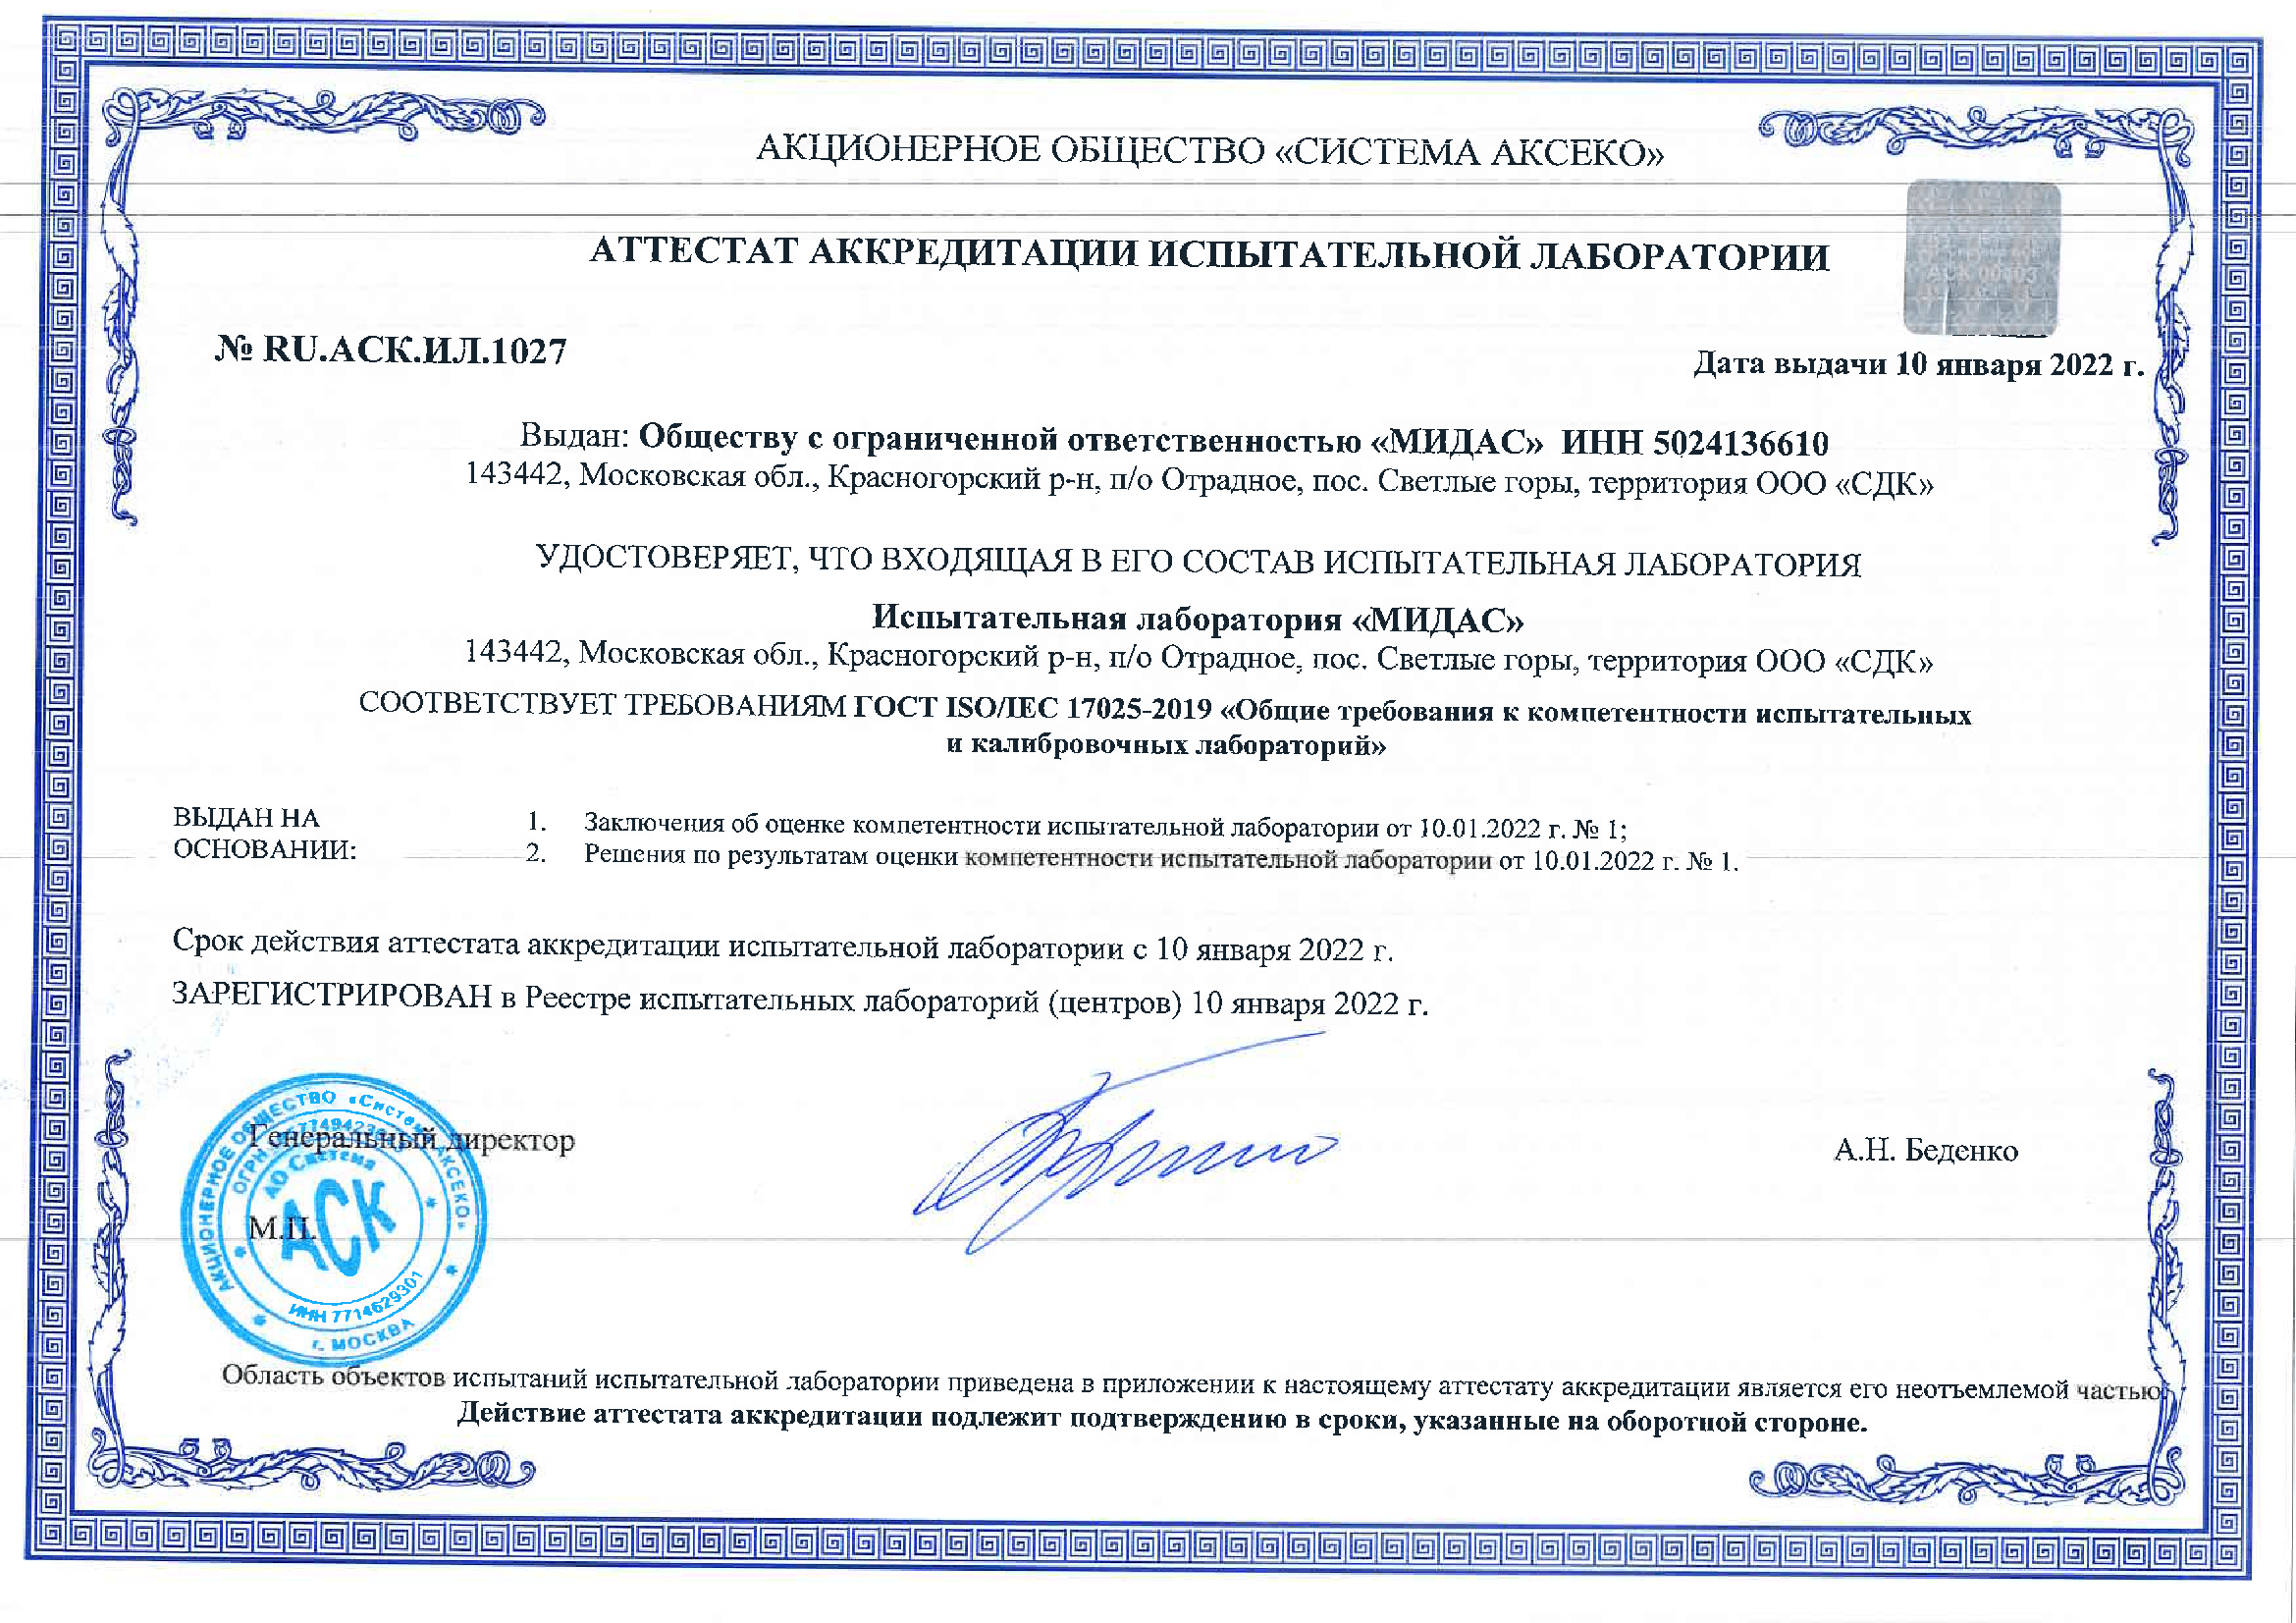 Аттестат аккредитации ИЛ МИДАС-1